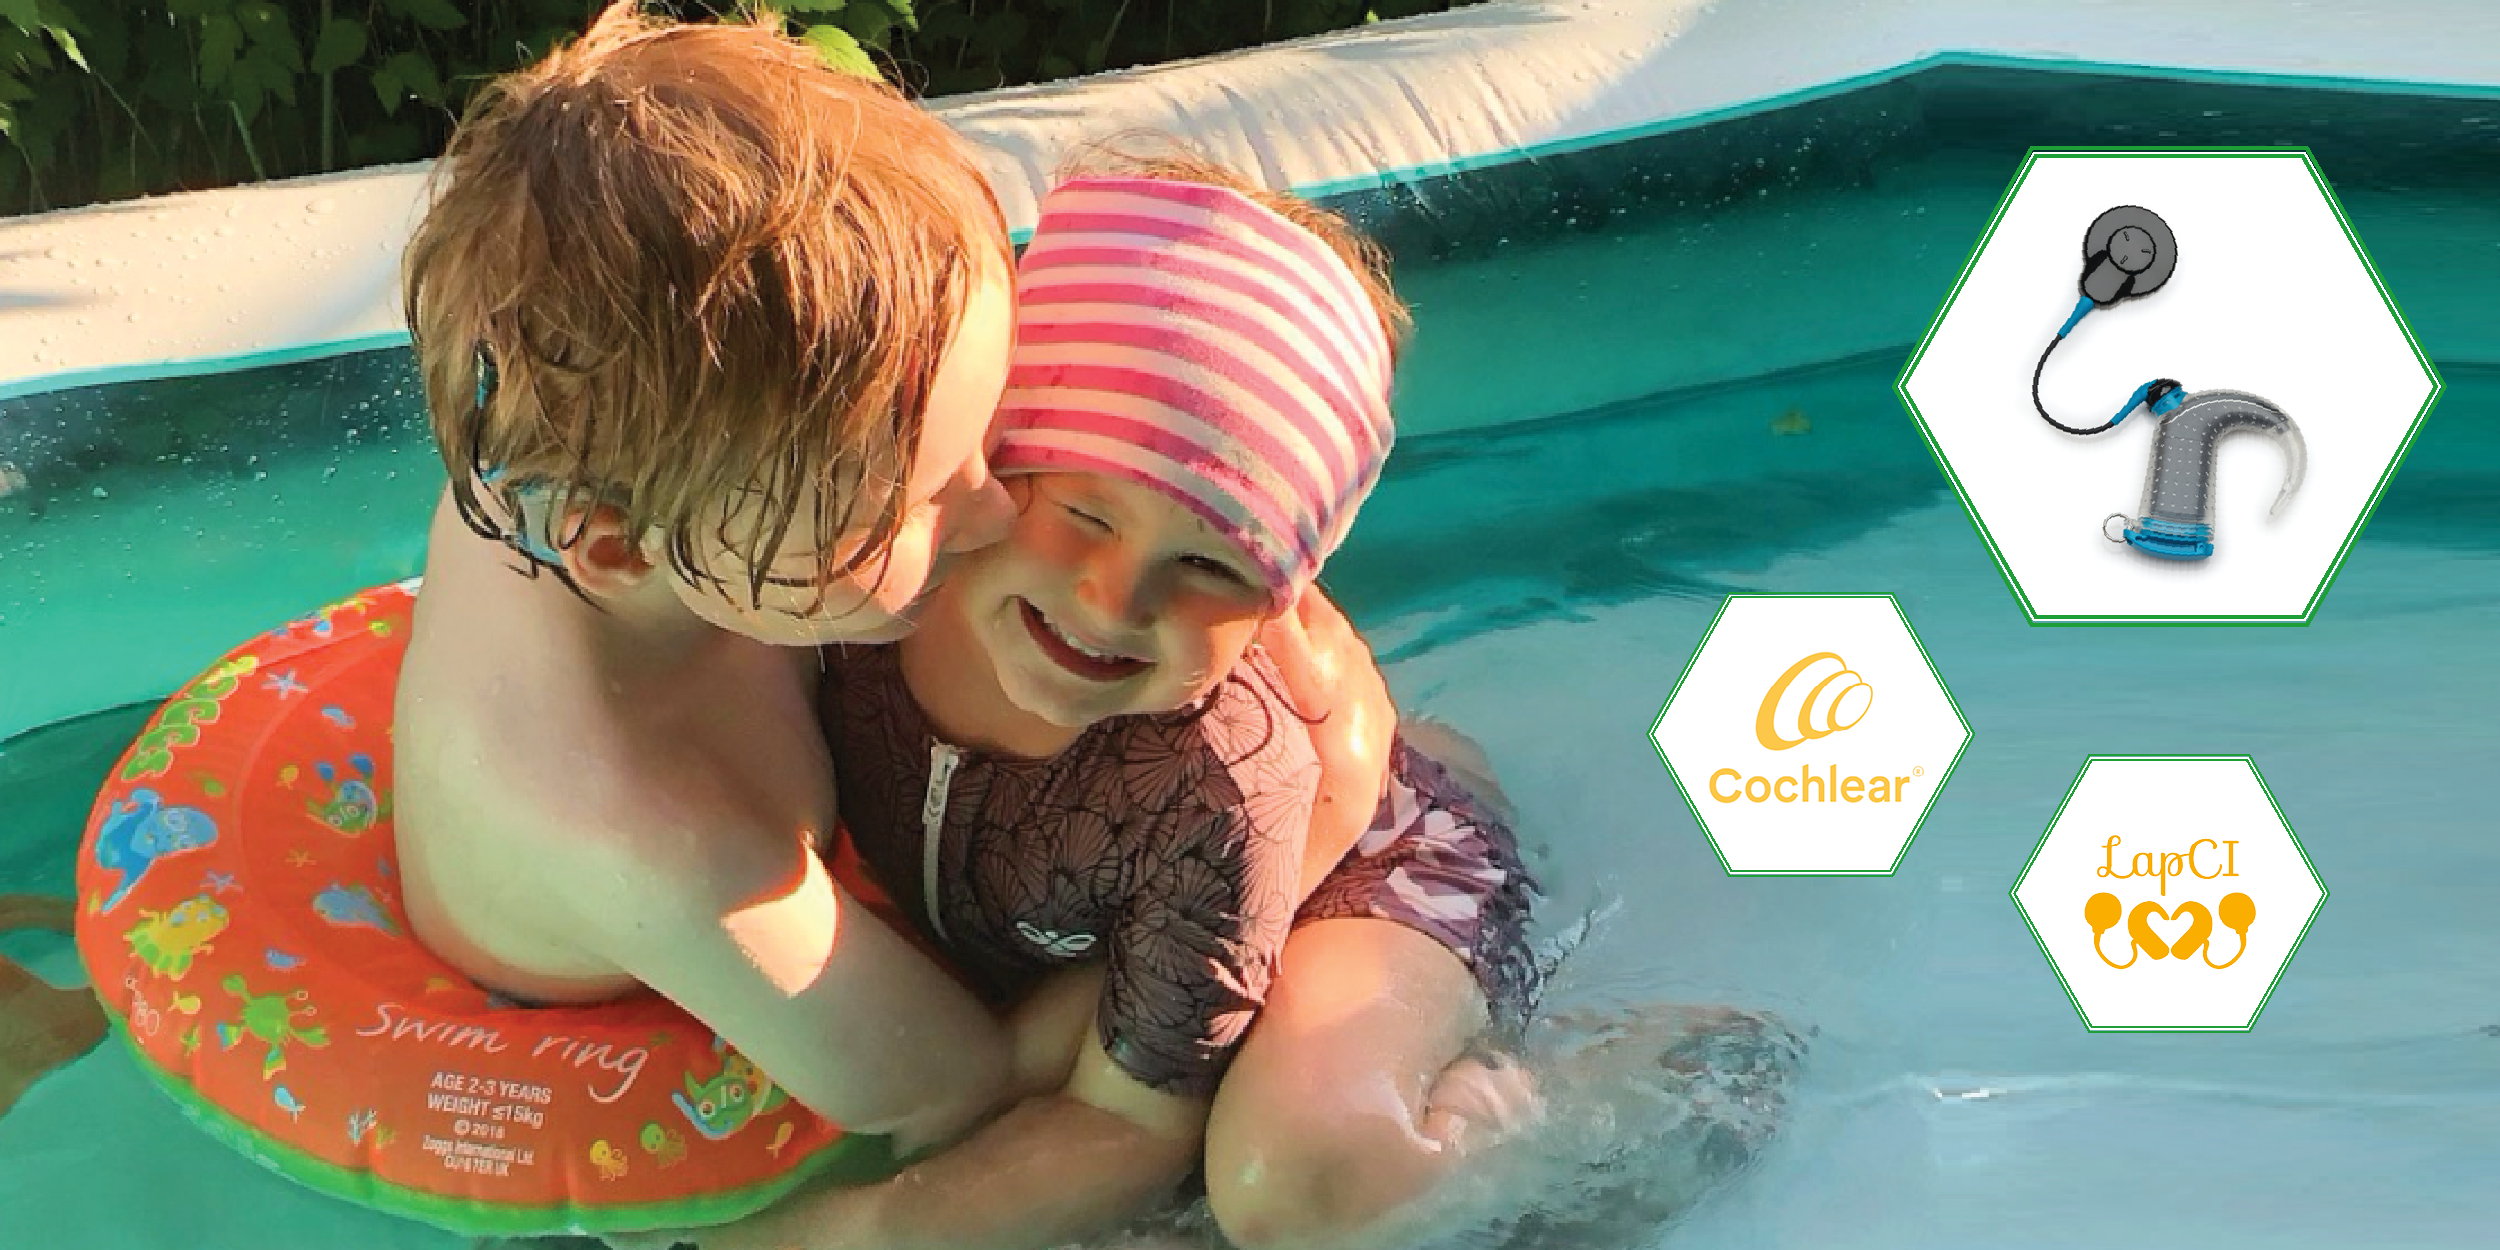 Kuvassa kaksi lasta leikkii vedessä, kuvioissa LapCI ry:n ja Cochlearin logot sekä Aqua+ -vesisuojus